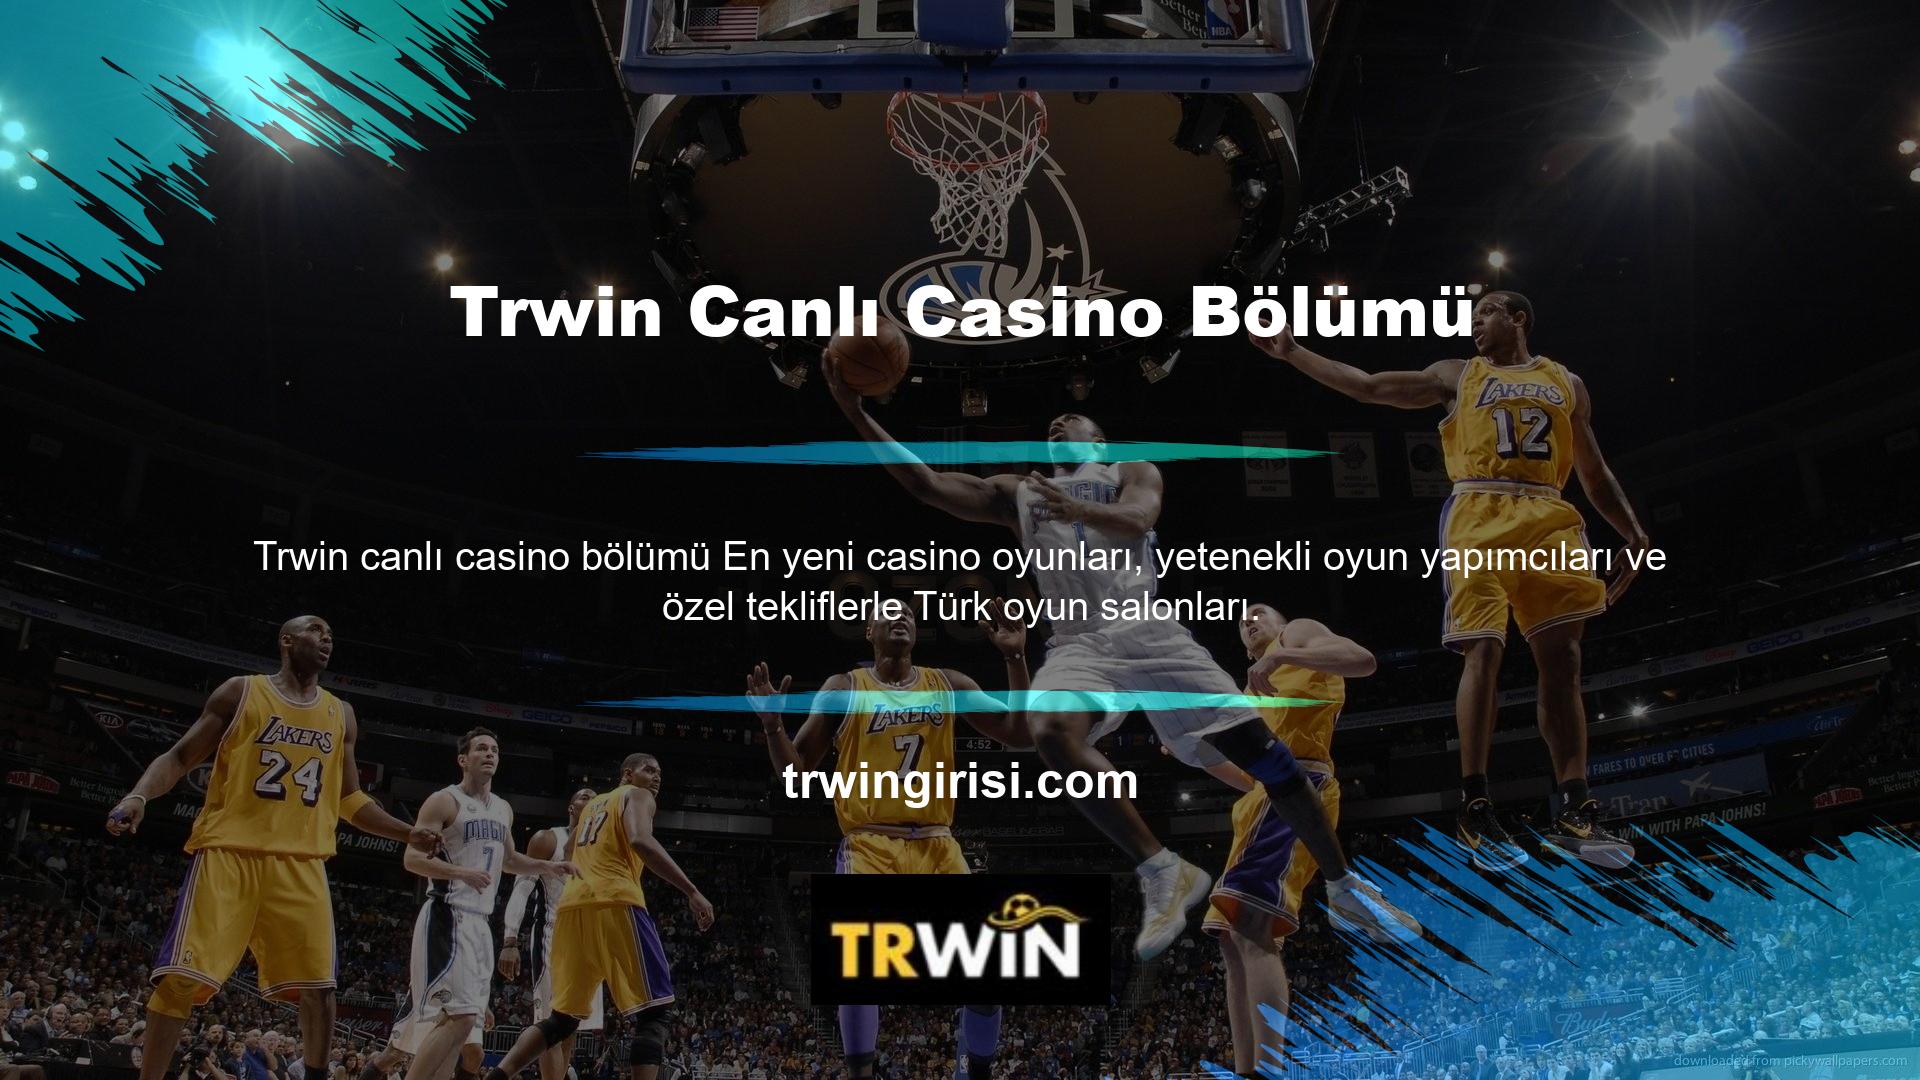 Trwin casino sistemi 7/24 canlı oyun sunuyor